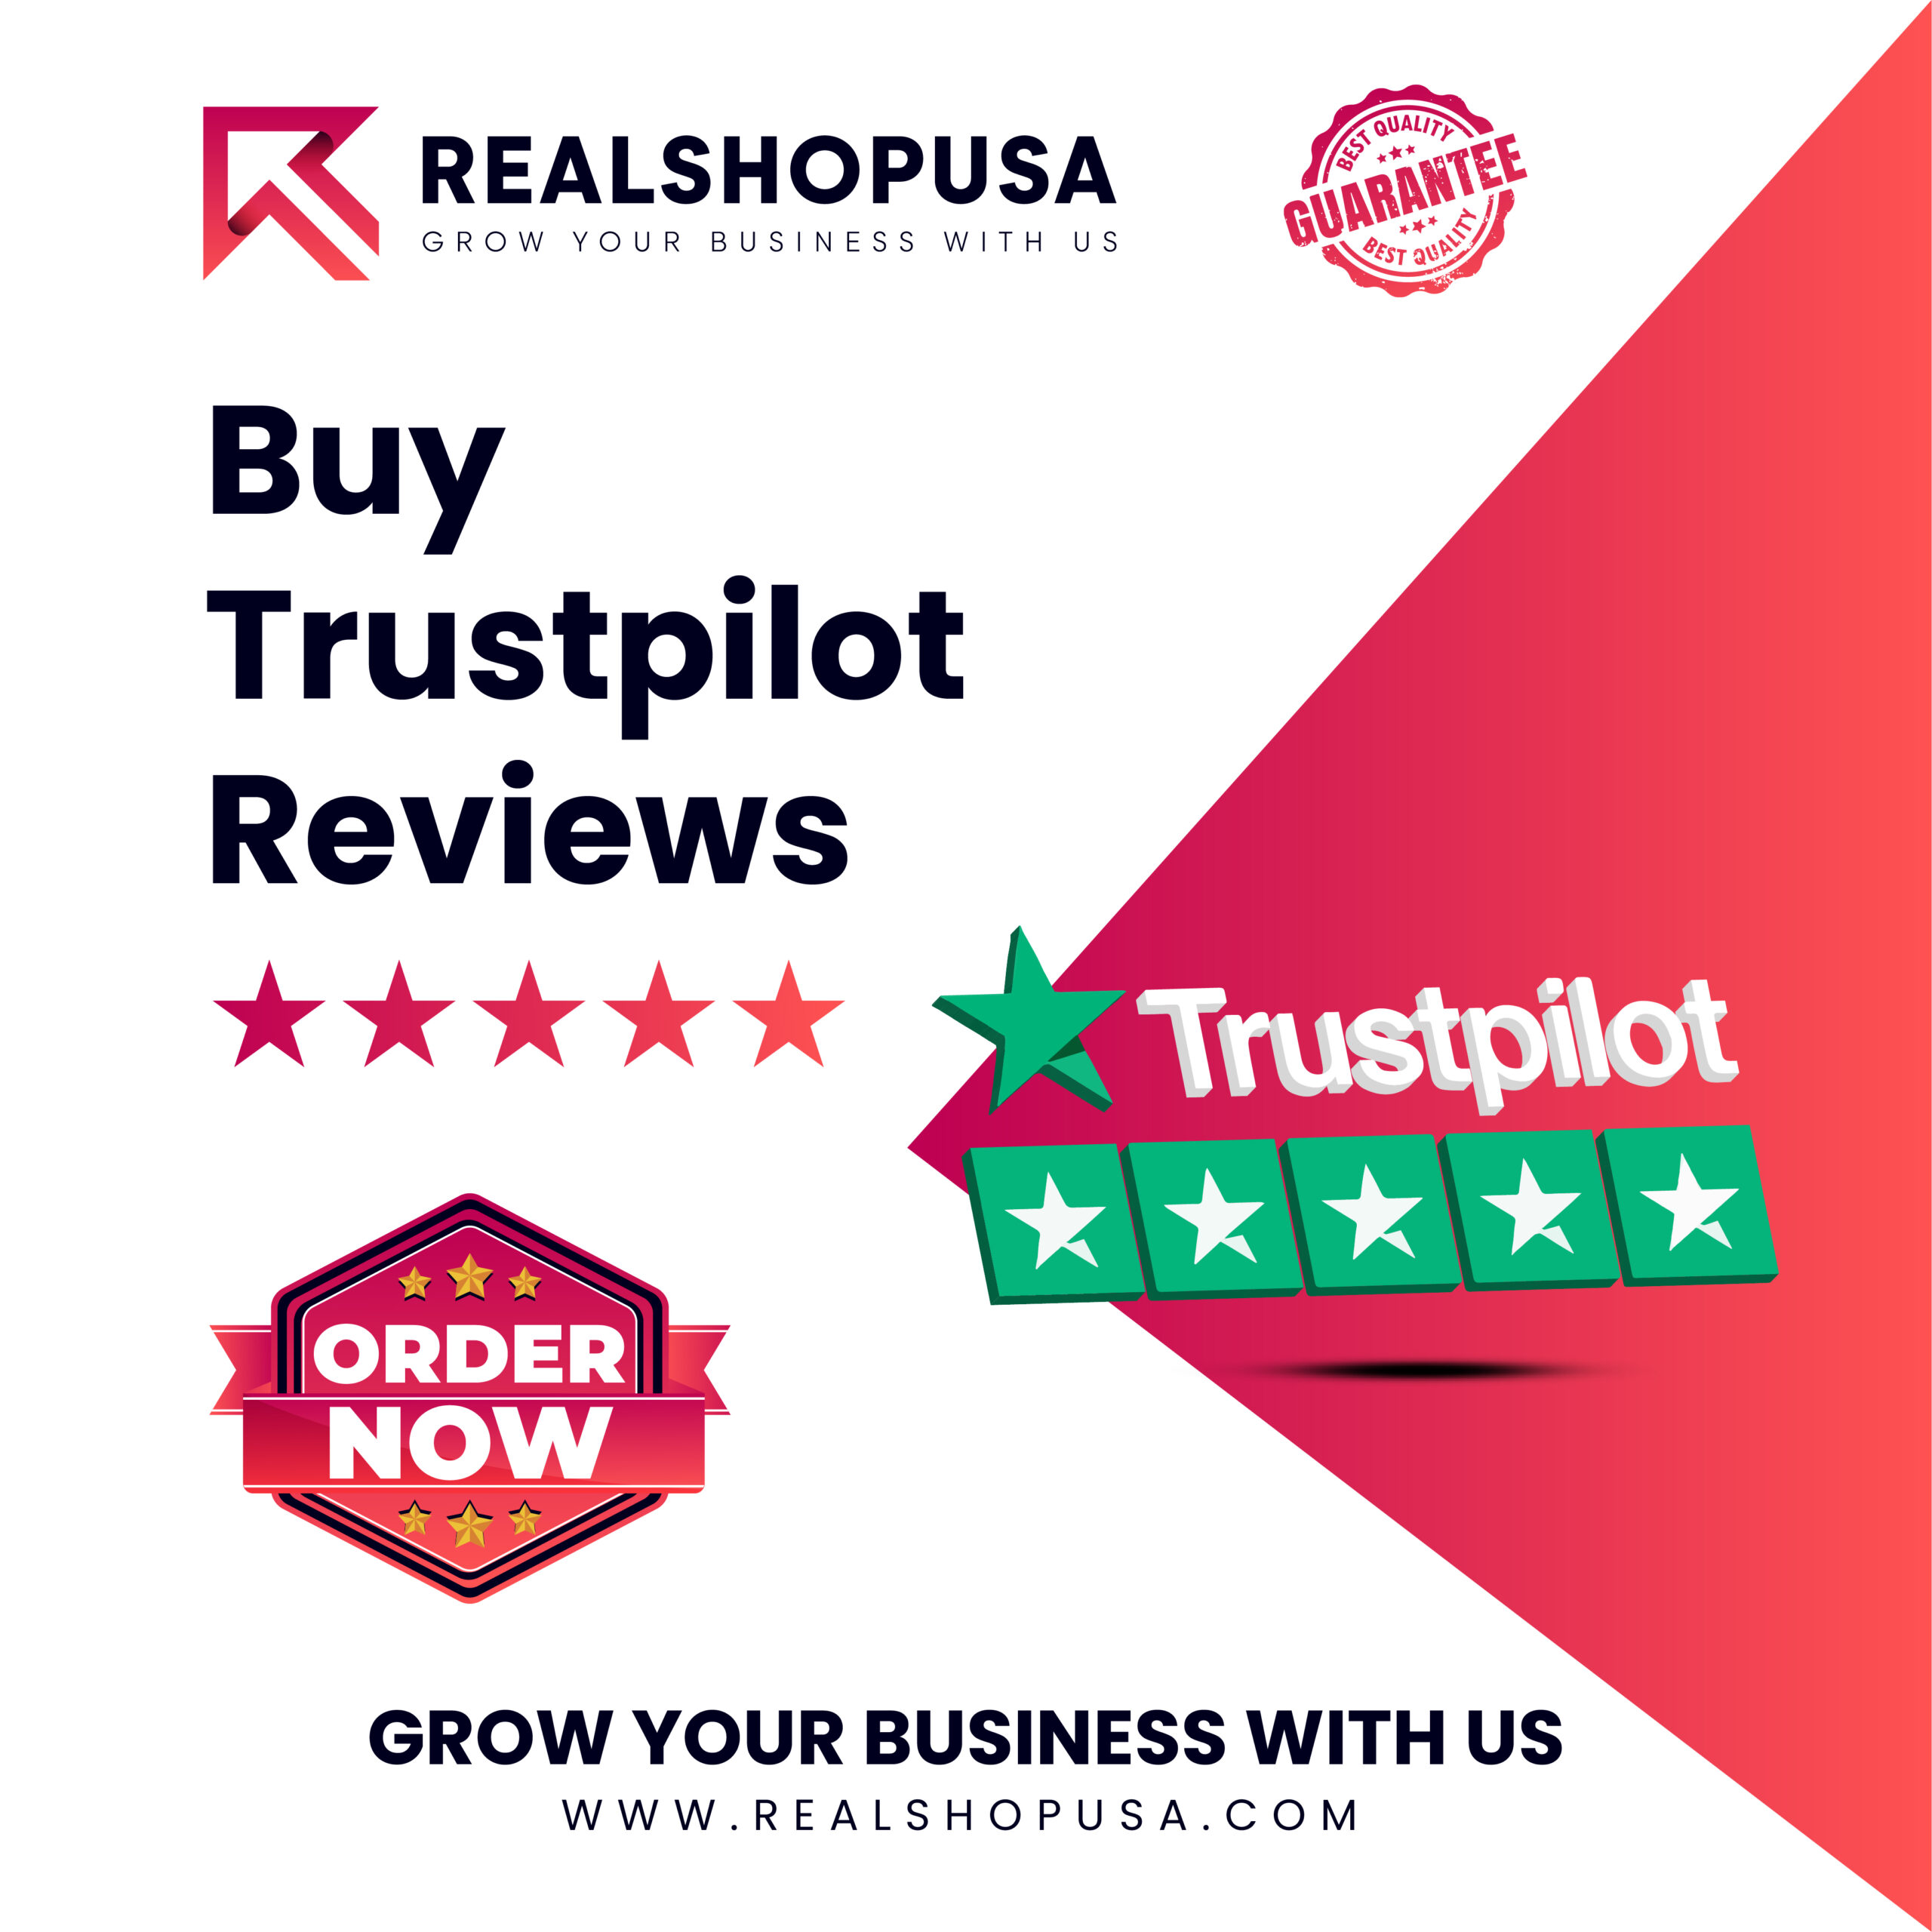 Buy Trustpilot Reviews - 100% Secure & Non-Drop Reviews...